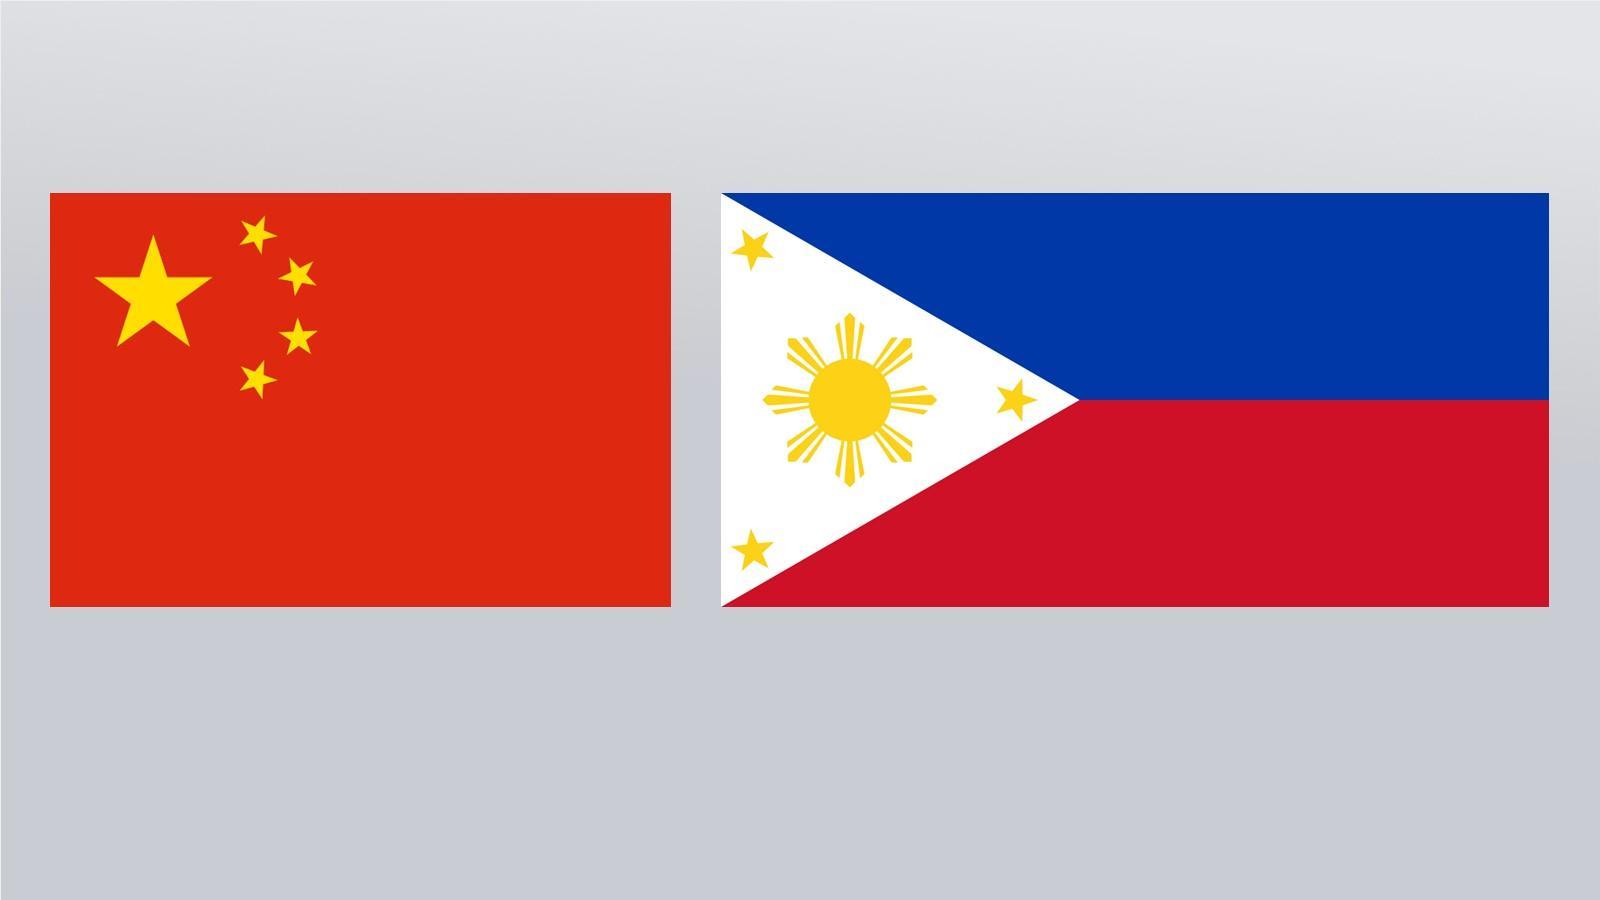 الرئيس الصيني يتحدث مع الرئيس الفلبيني المنتخب عبر الهاتف بشأن العلاقات الثنائية بين البلدين